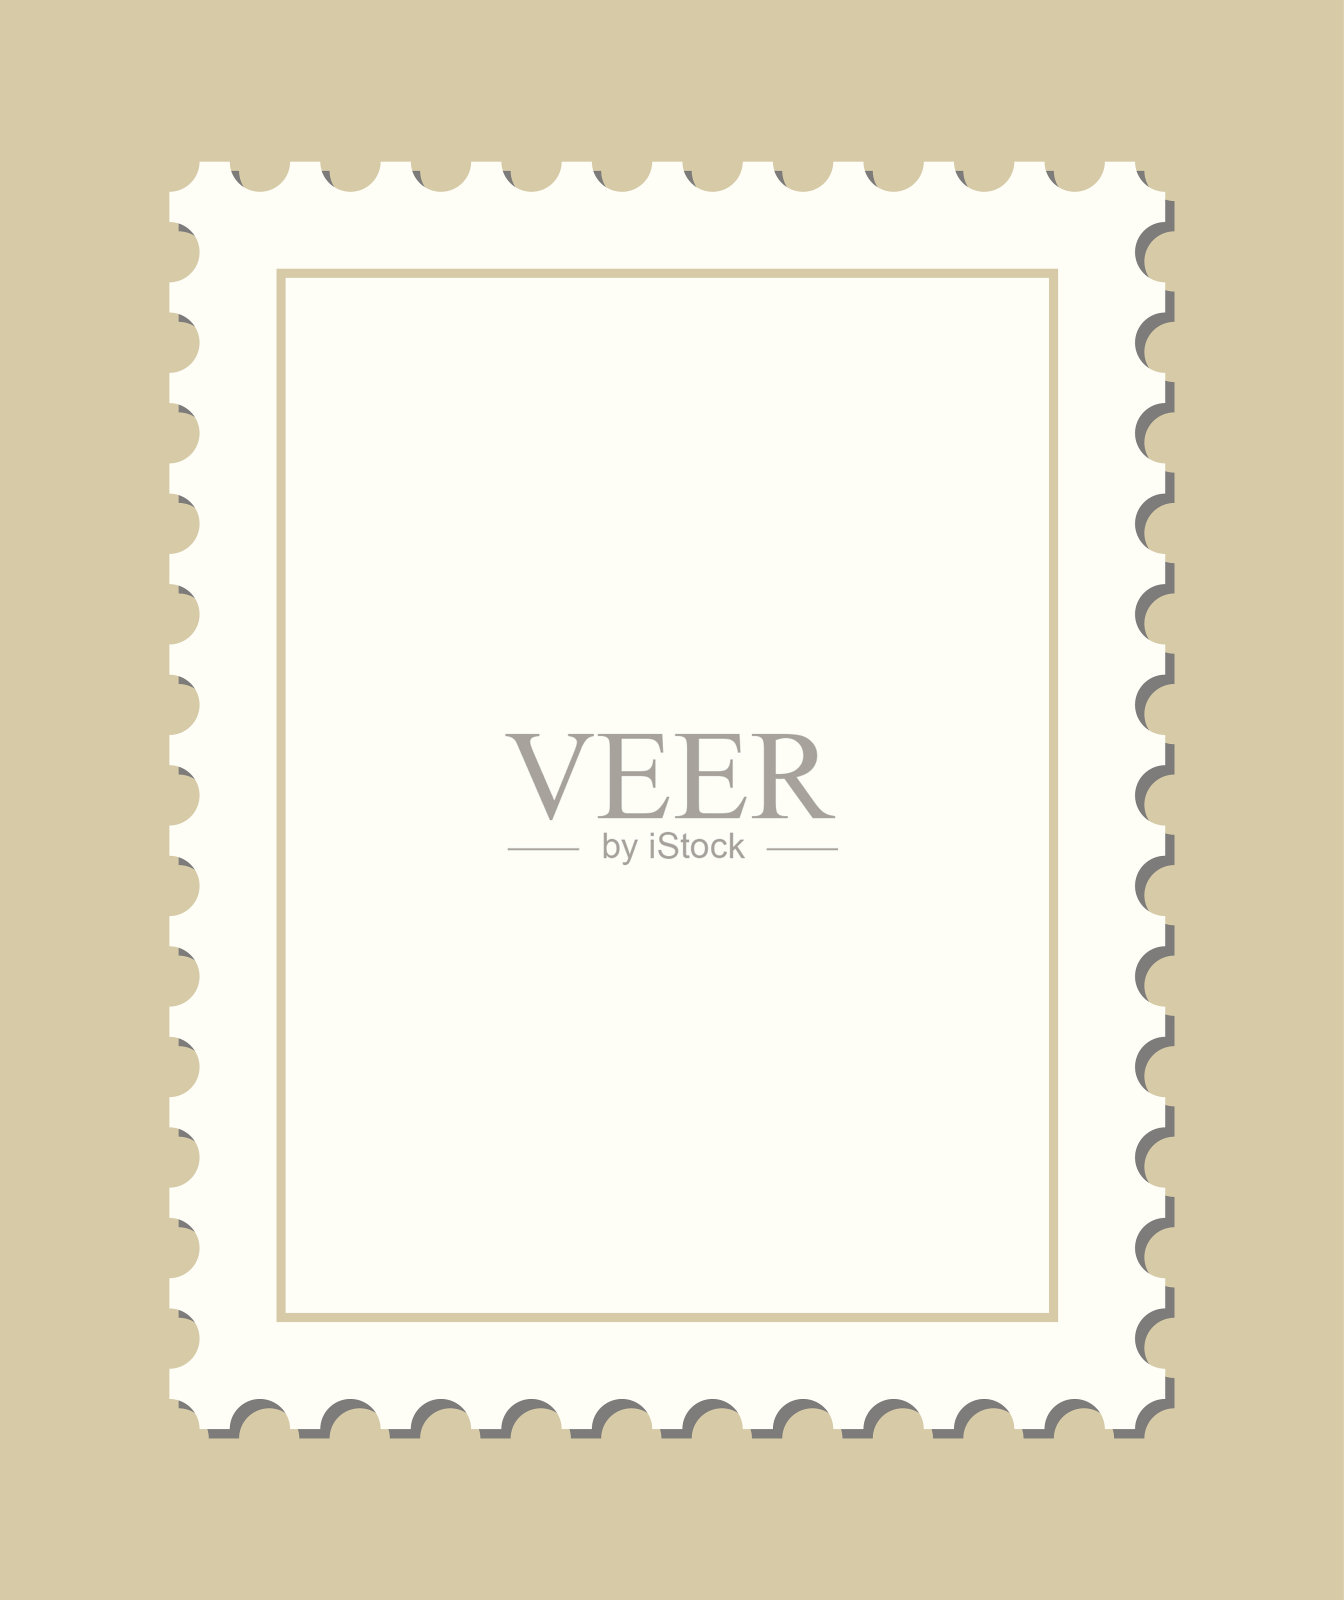 空白的邮票设计元素图片